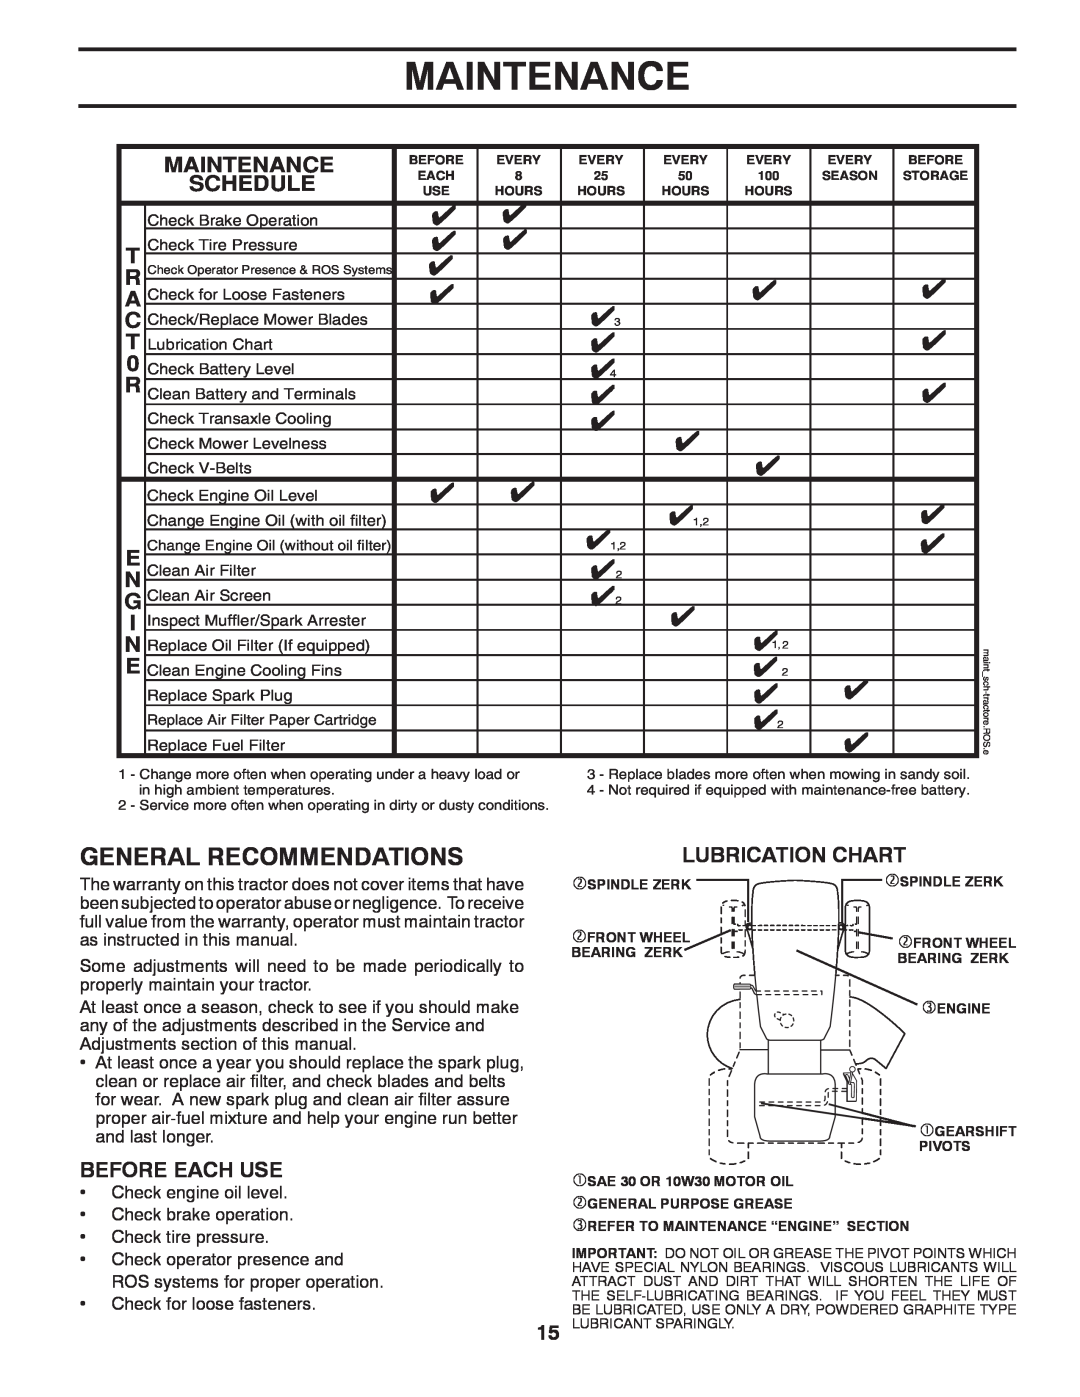 Poulan 960120068 manual Maintenance, Lubrication Chart 